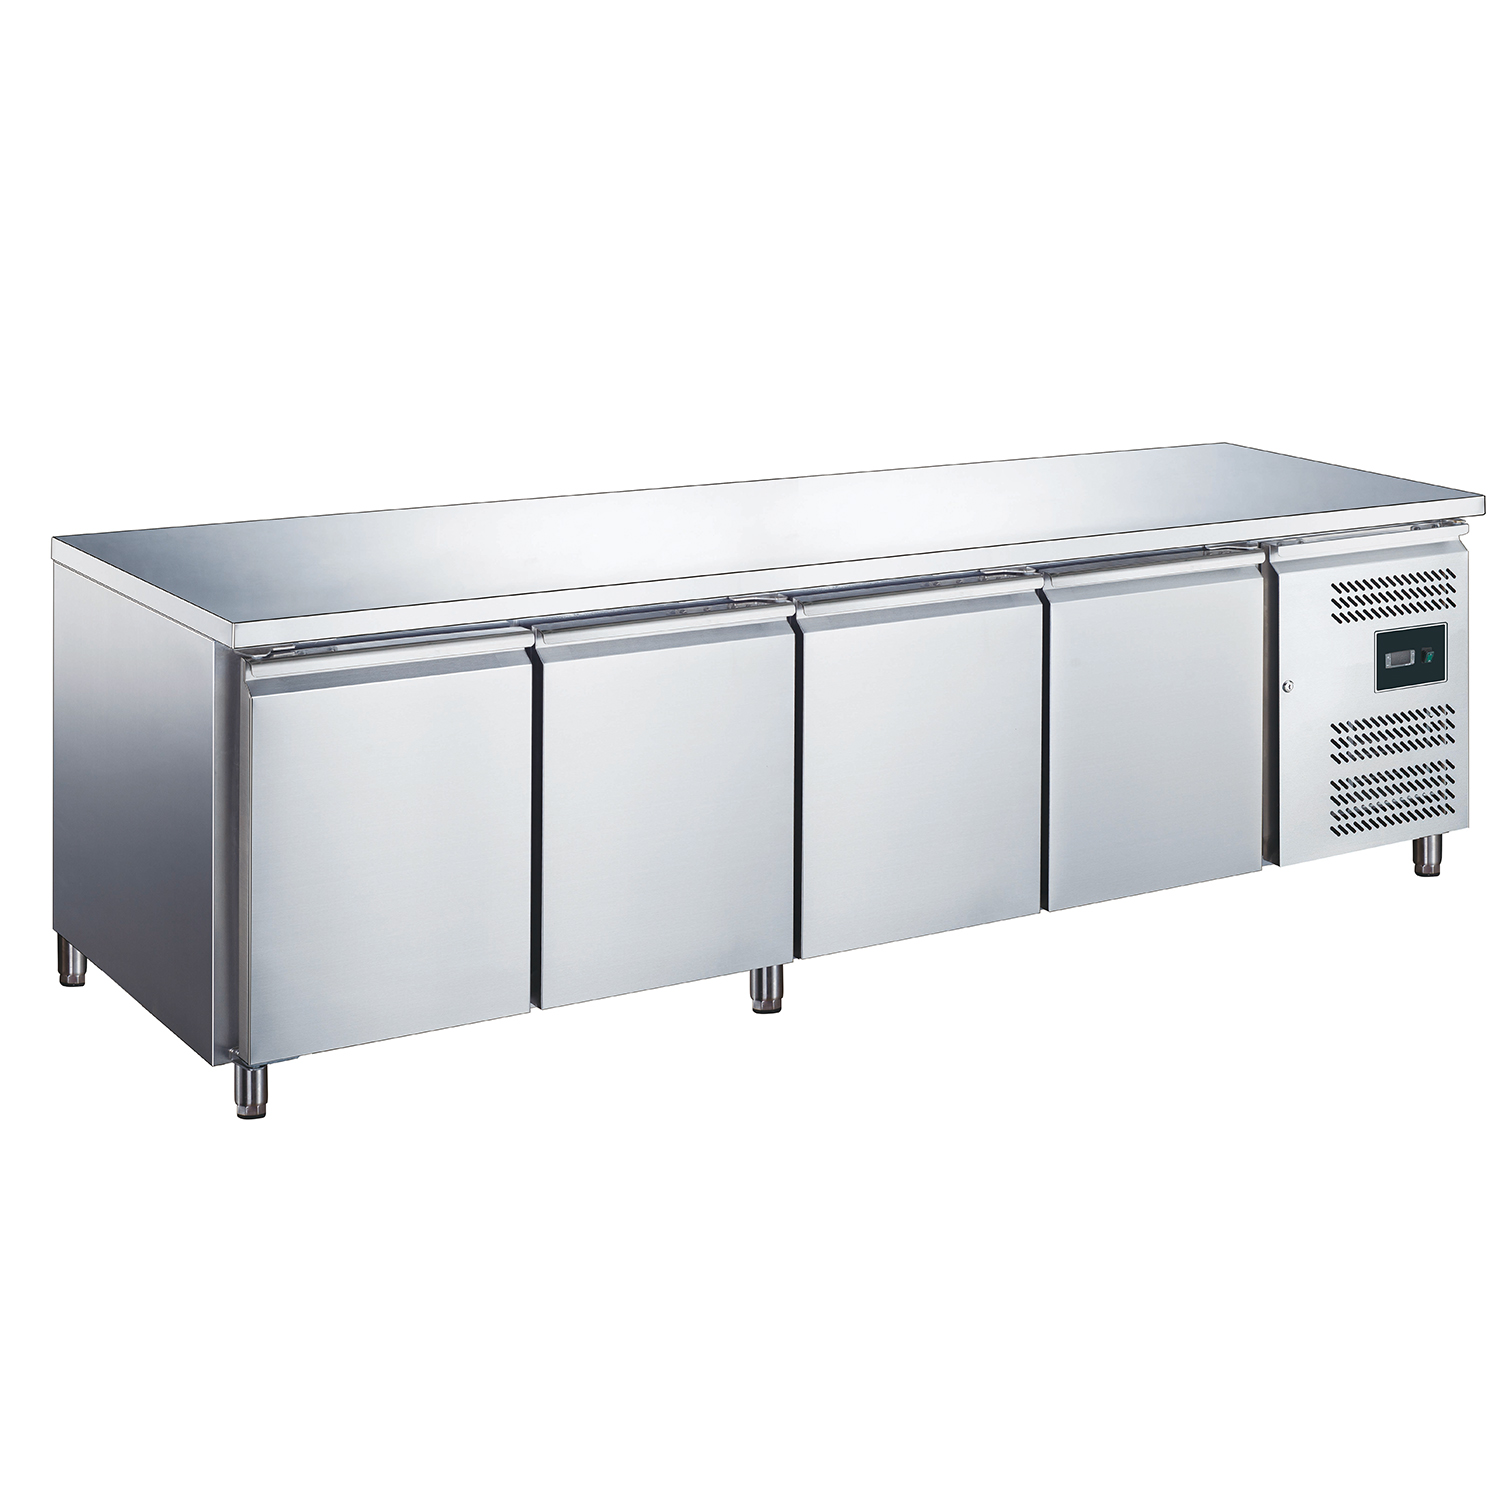 Table réfrigérée à 4 portes, modèle EGN 4100 TN